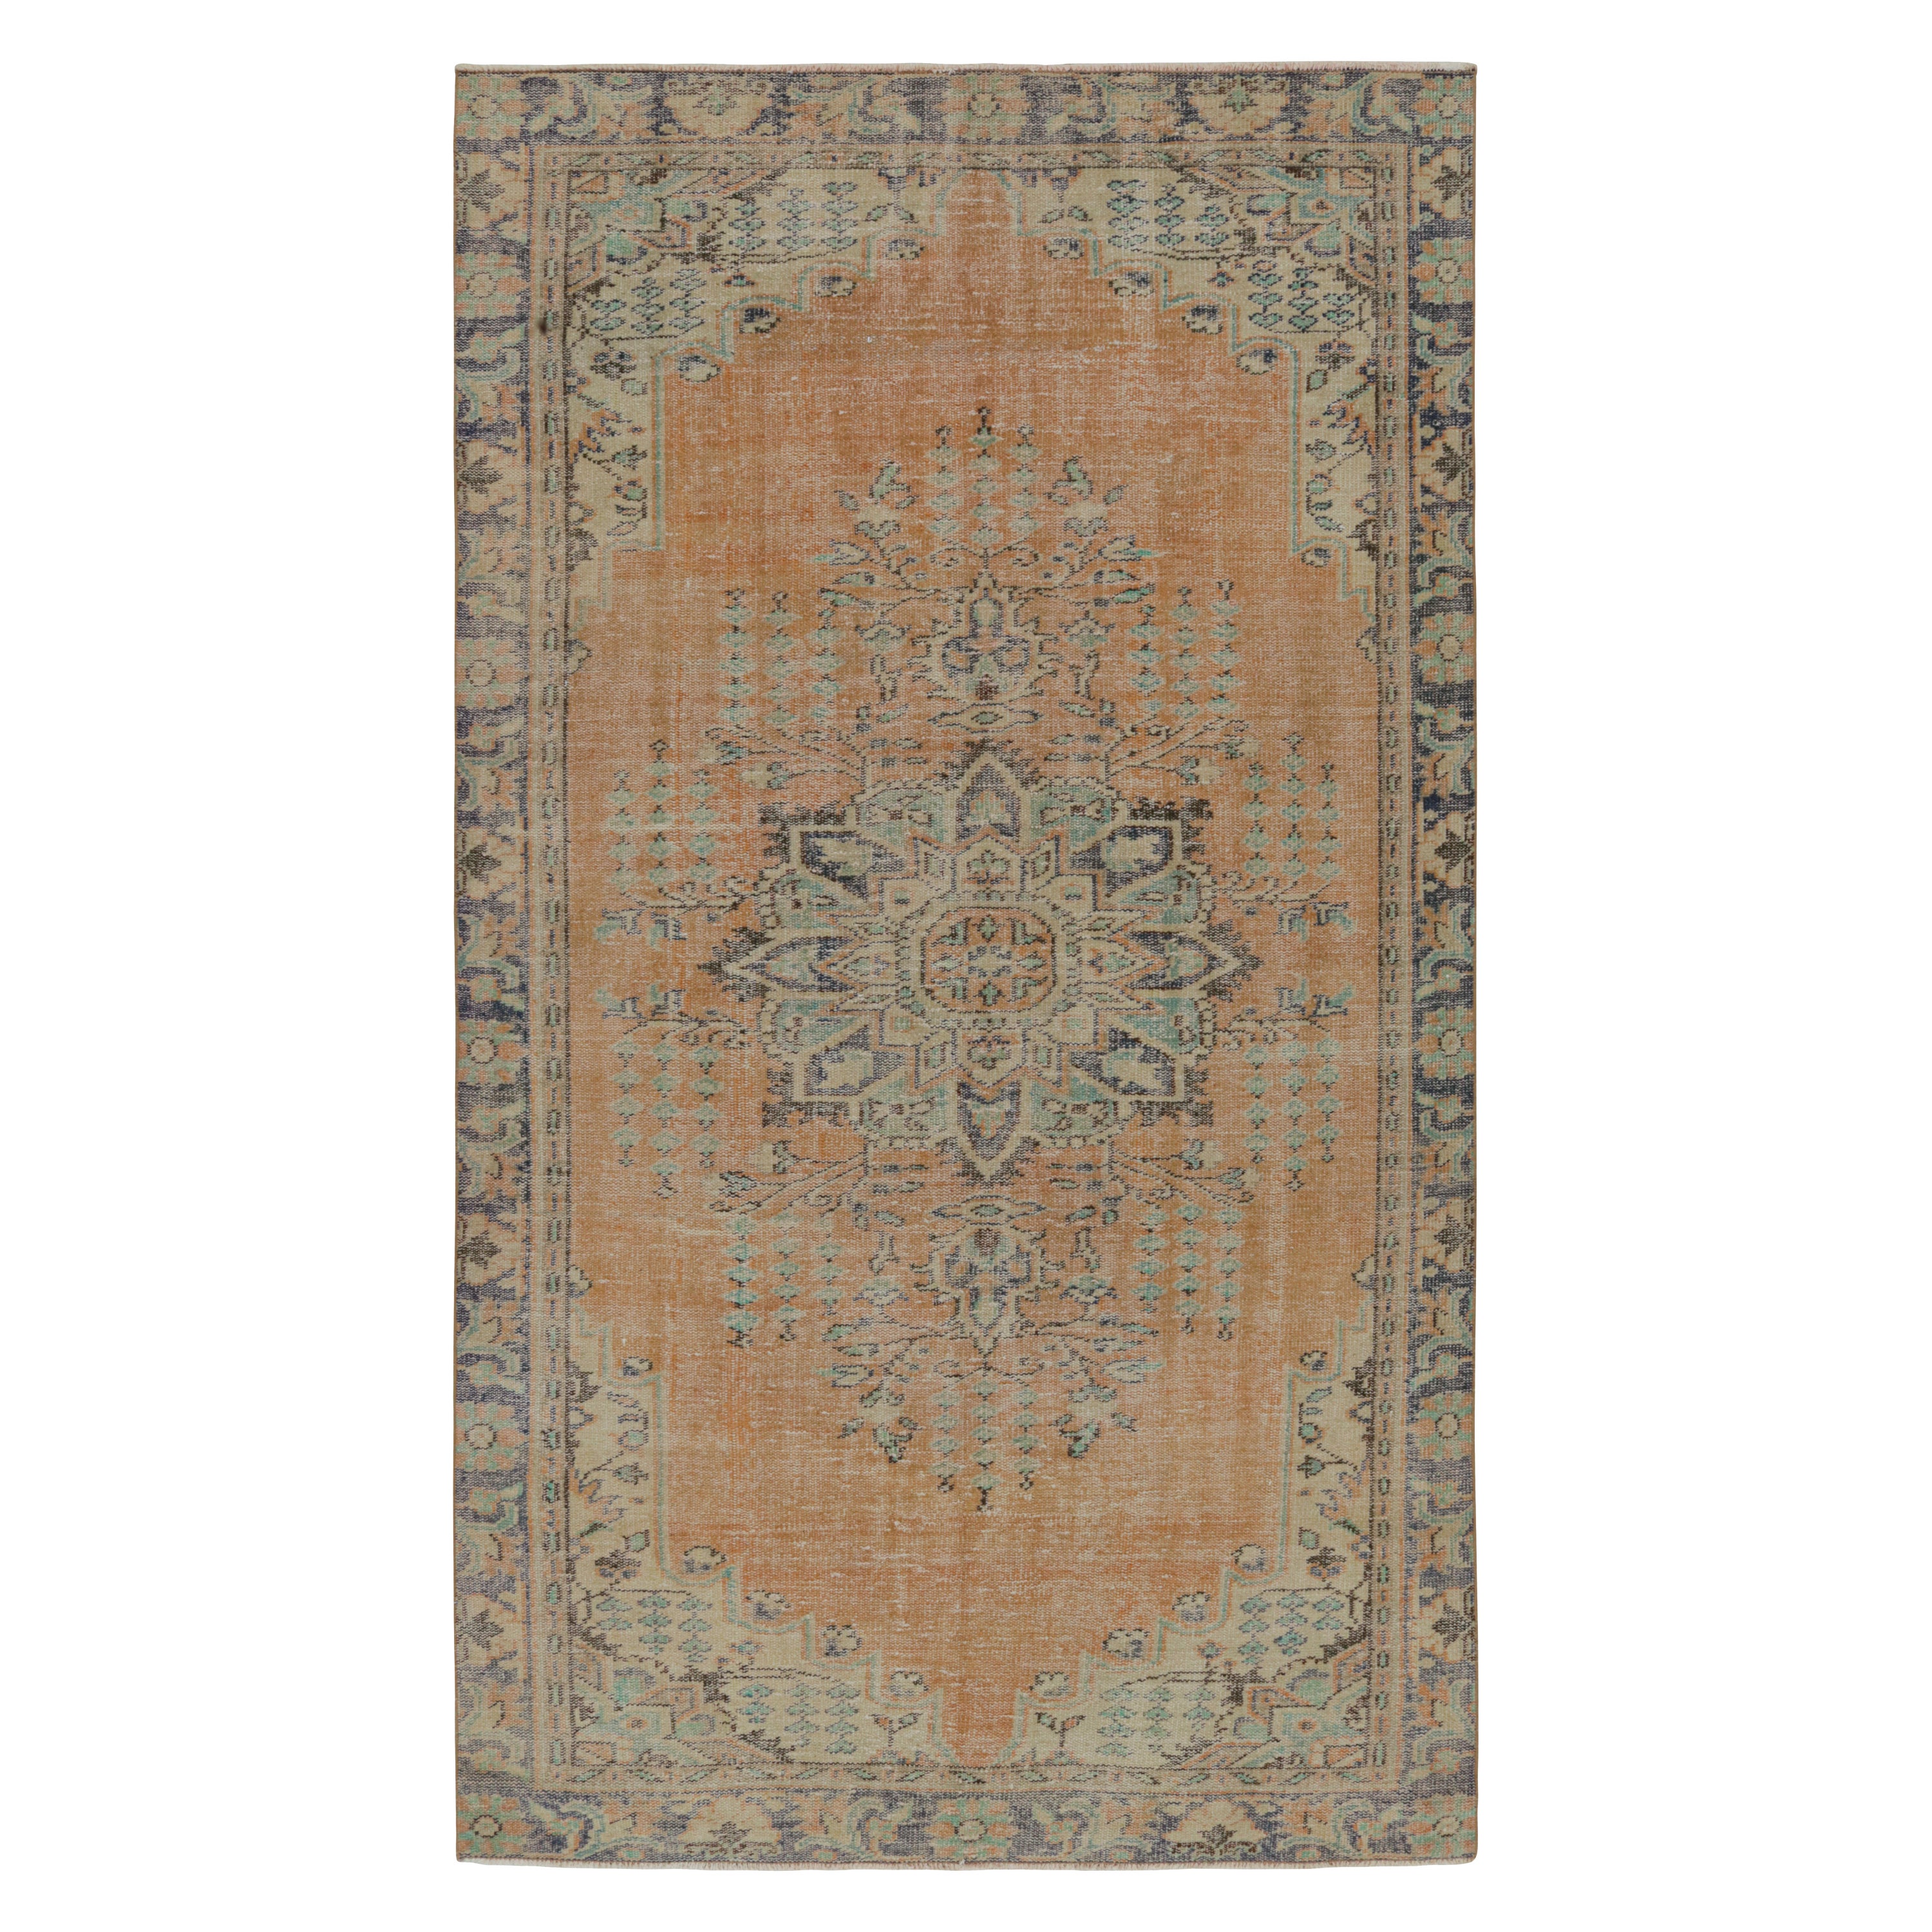 Vintage Zeki Müren Teppich im persischen Stil mit zentralem Medaillon, von Rug & Kilim